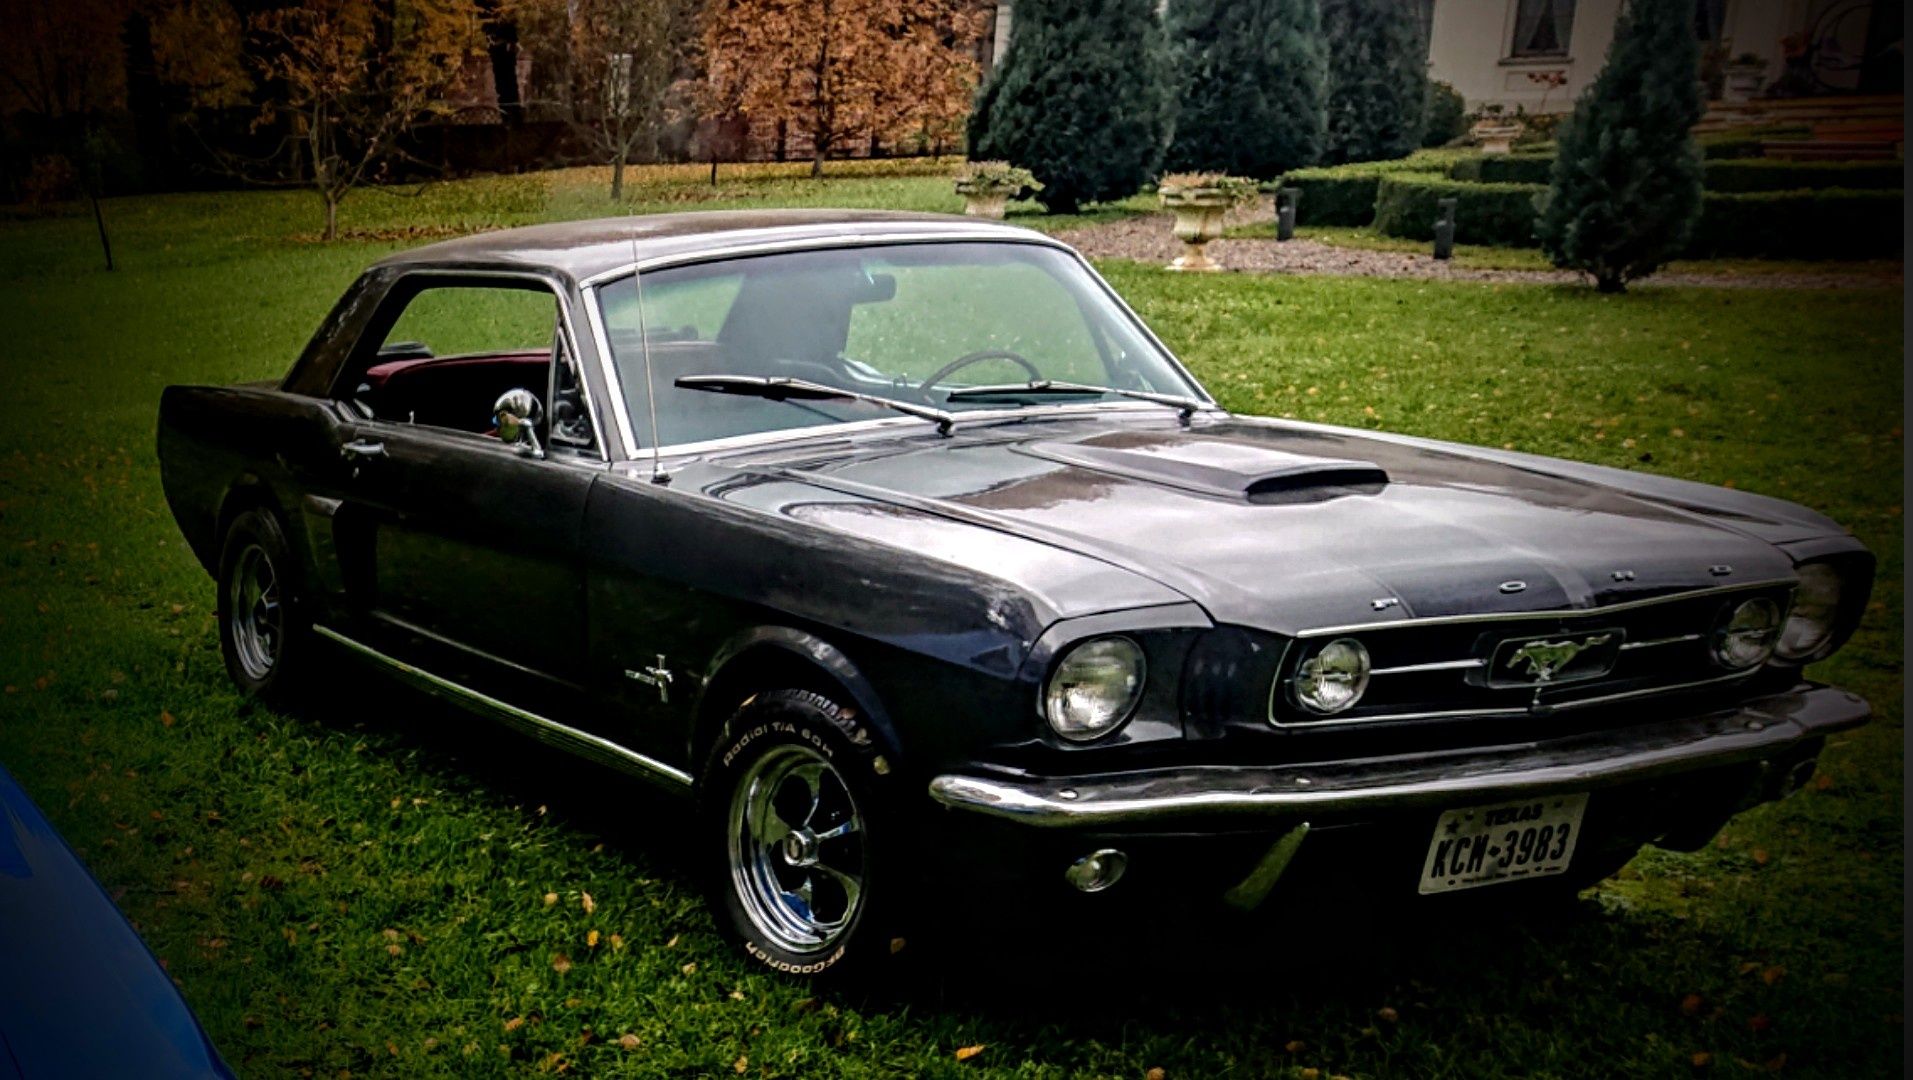 Ford Mustang 1965 odrestałrowane w PL. zamiana